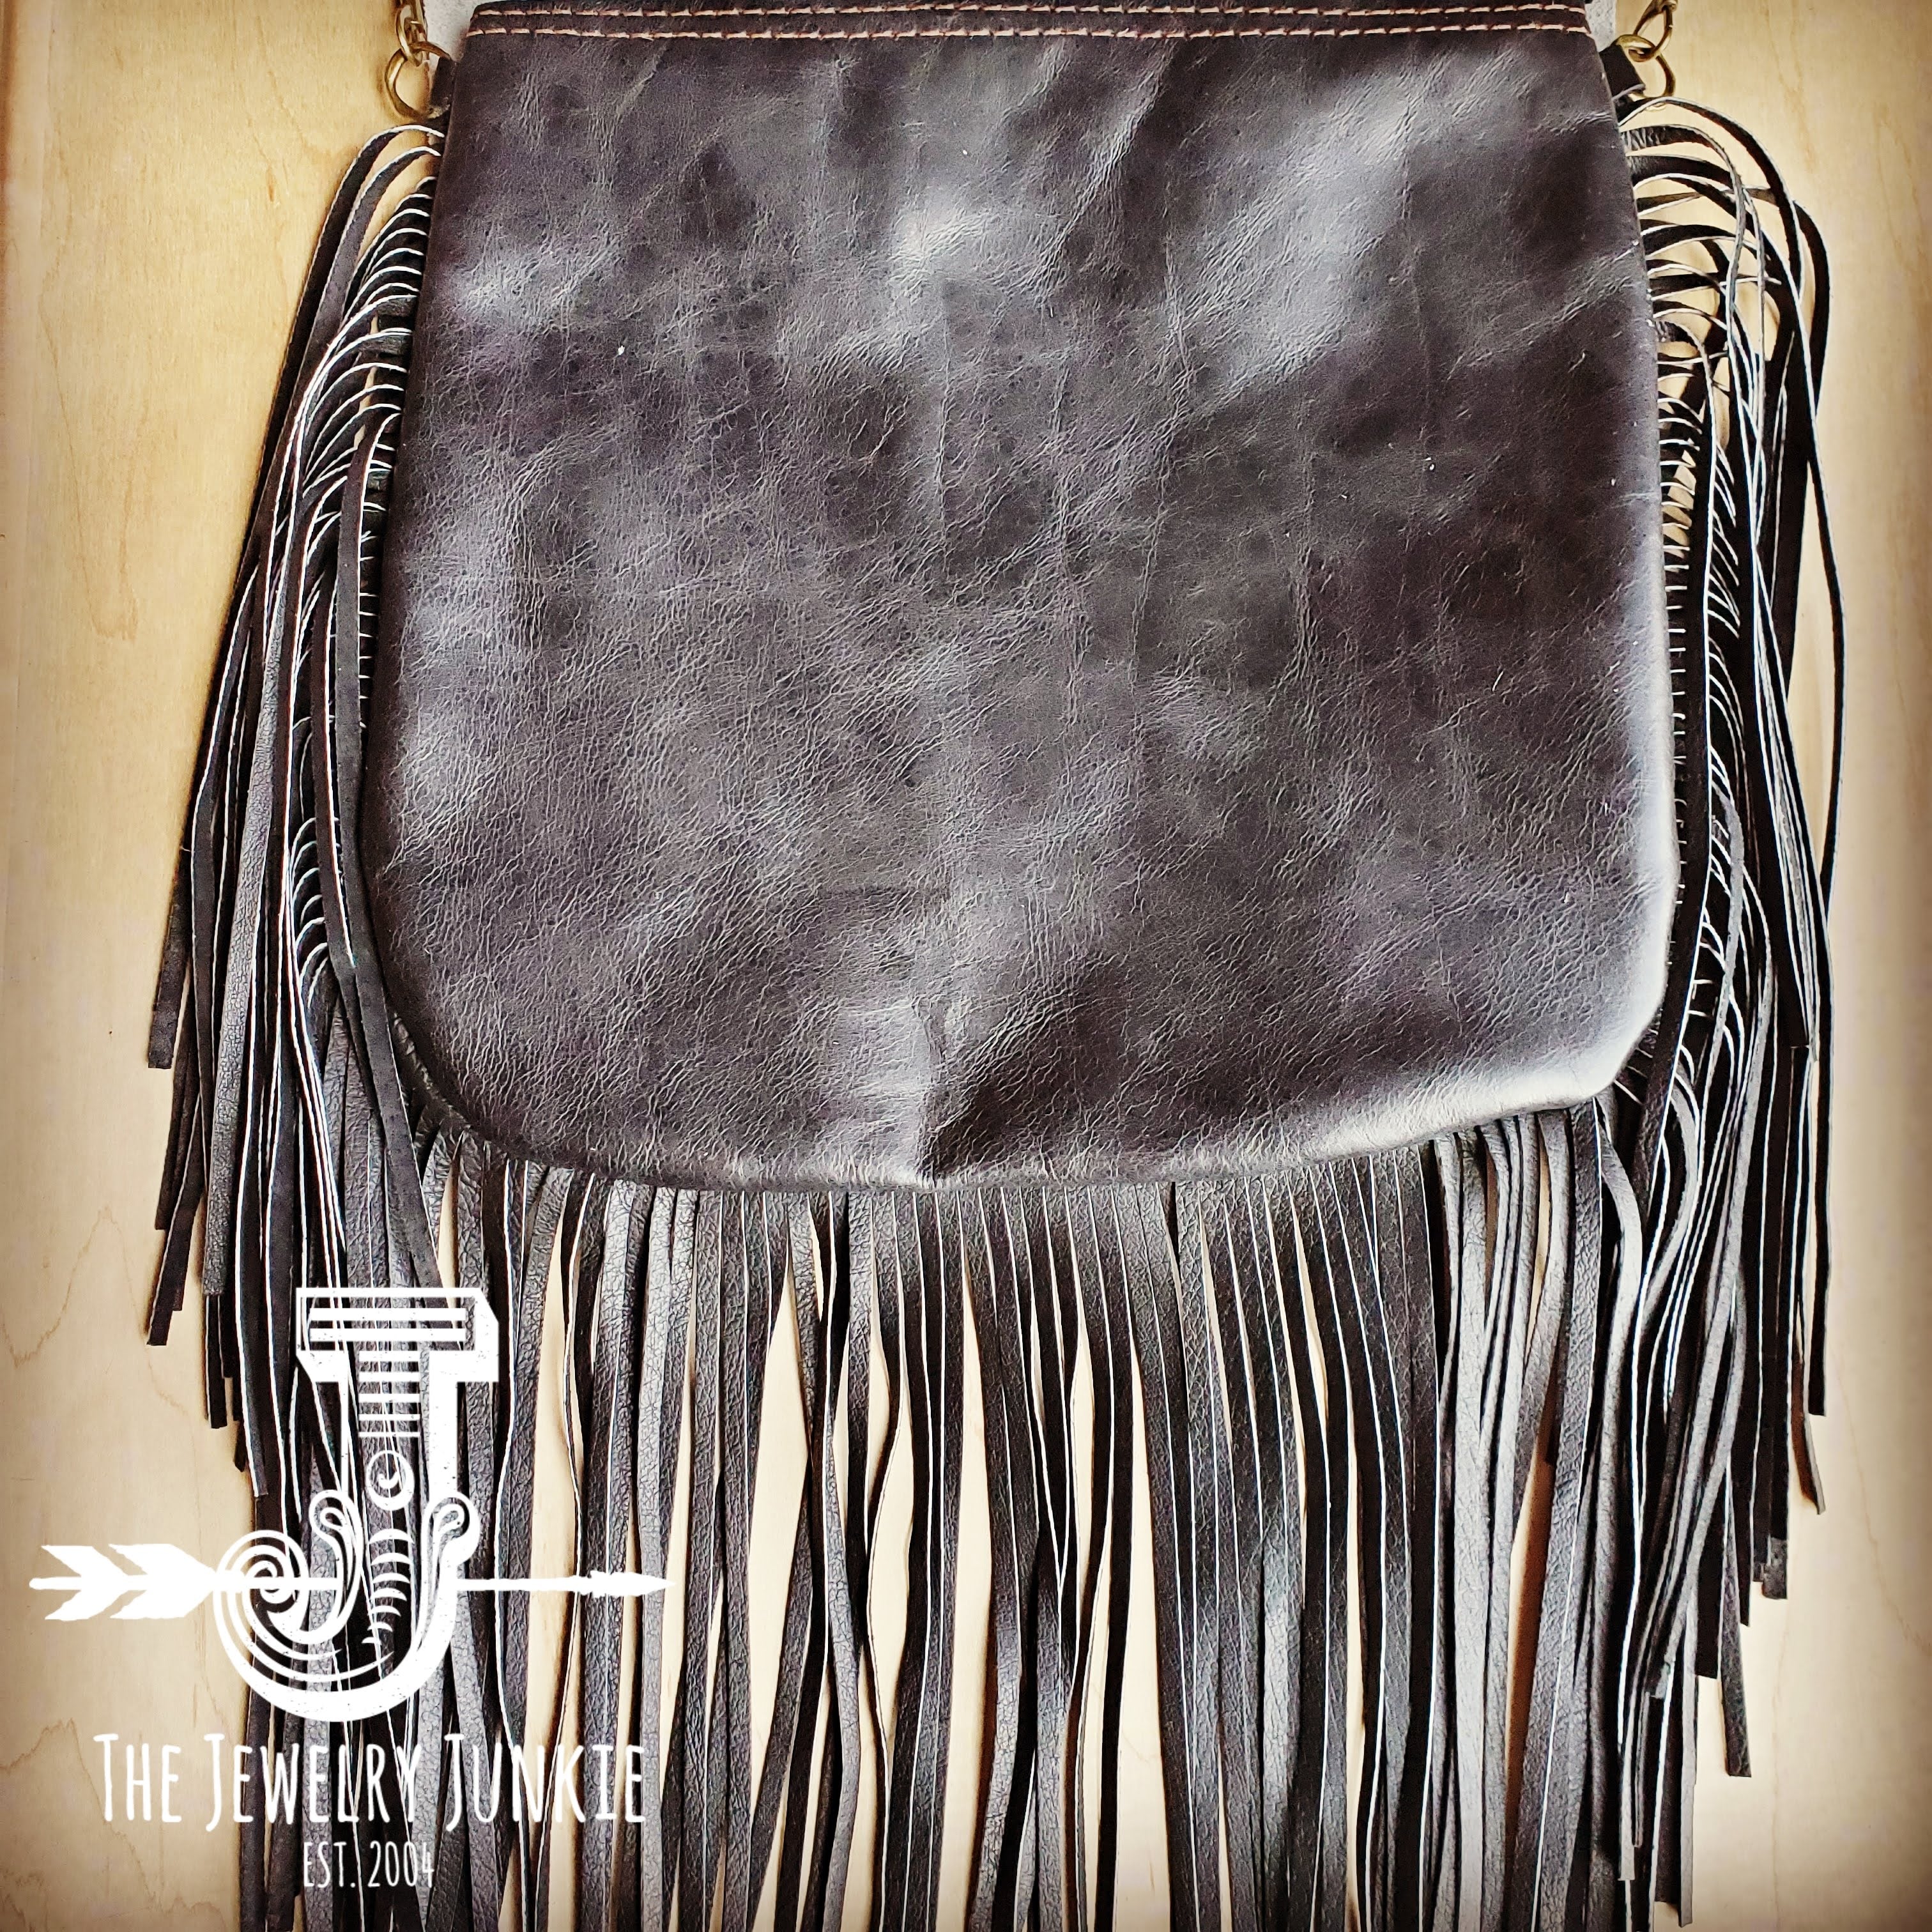 Navajo Print Handbag - Buy This Boho Purse| Jewelry Junkie – The ...